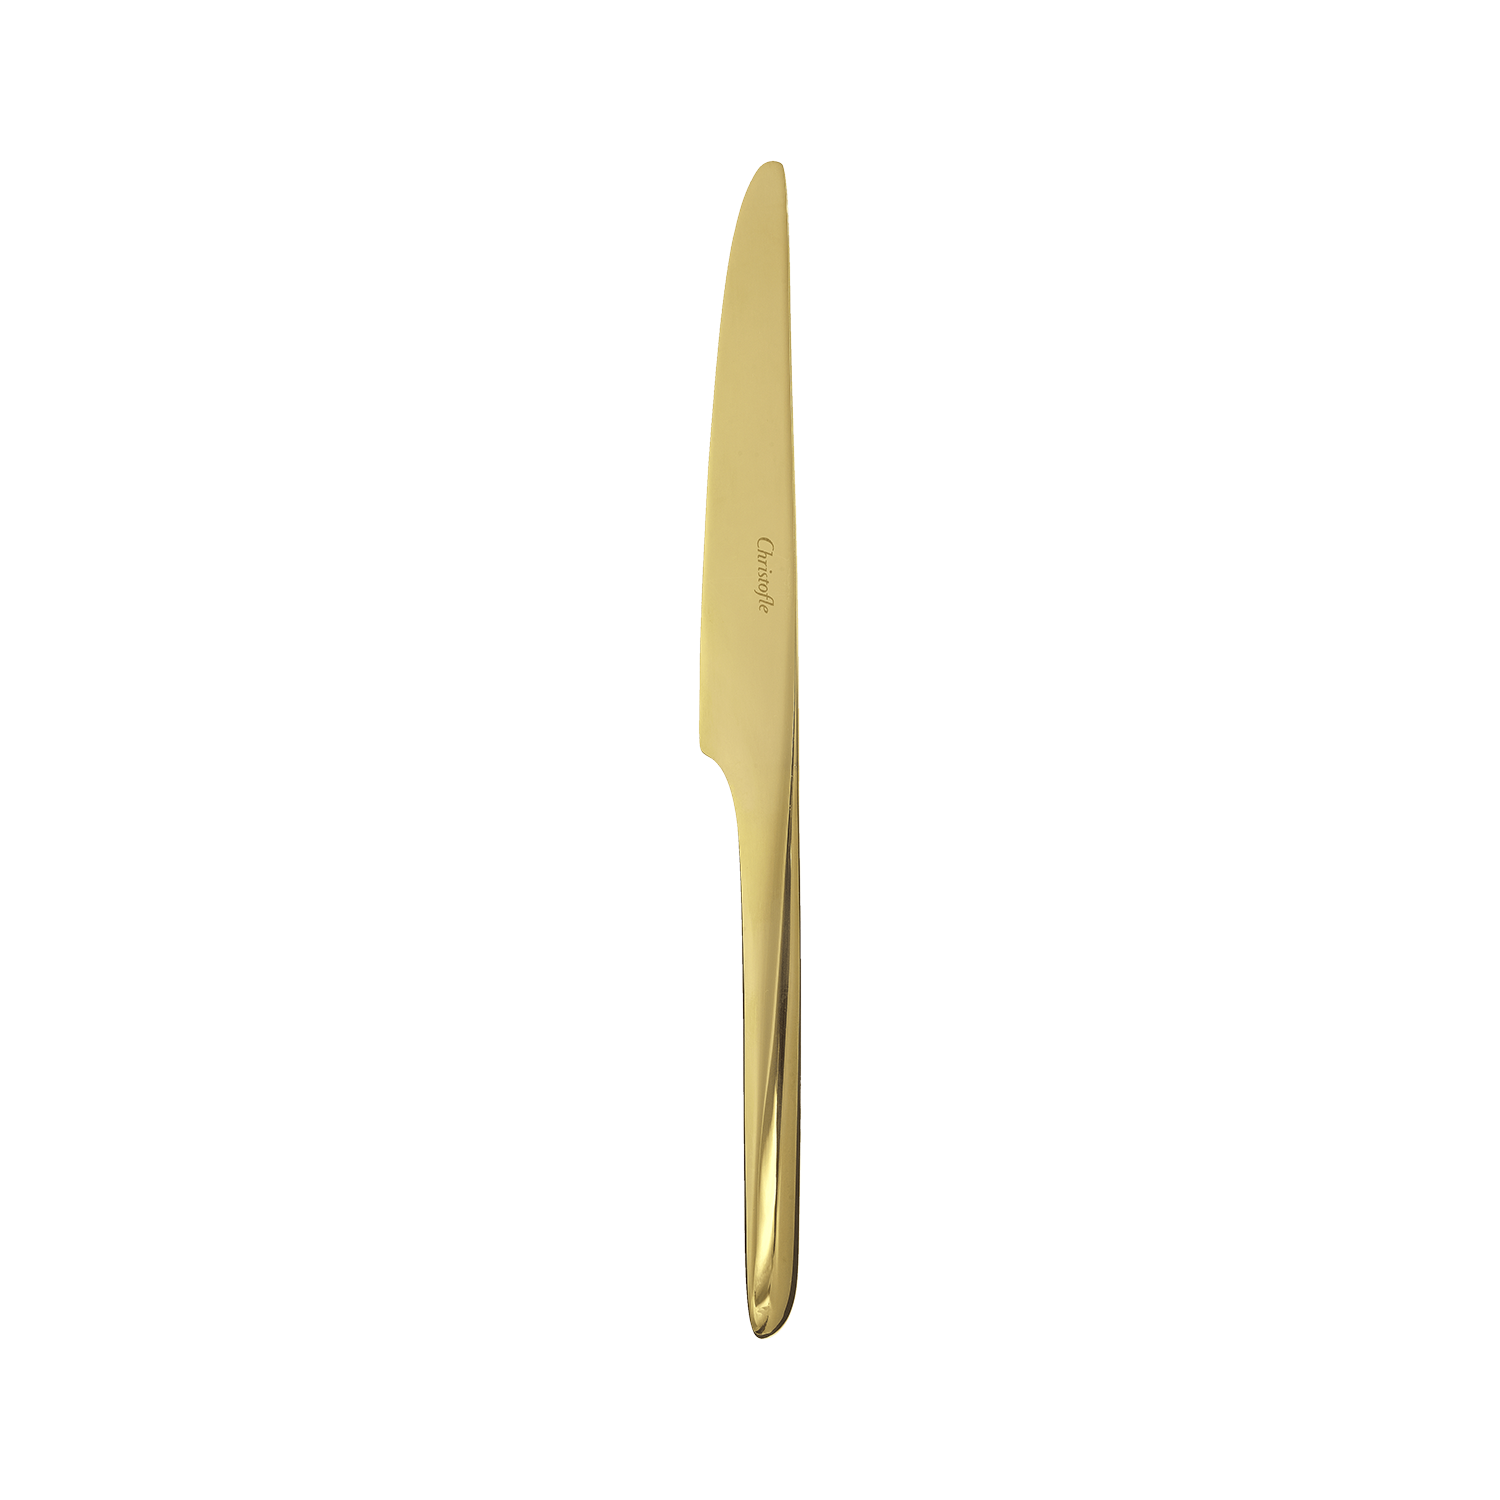 Gold stainless steel dessert knife